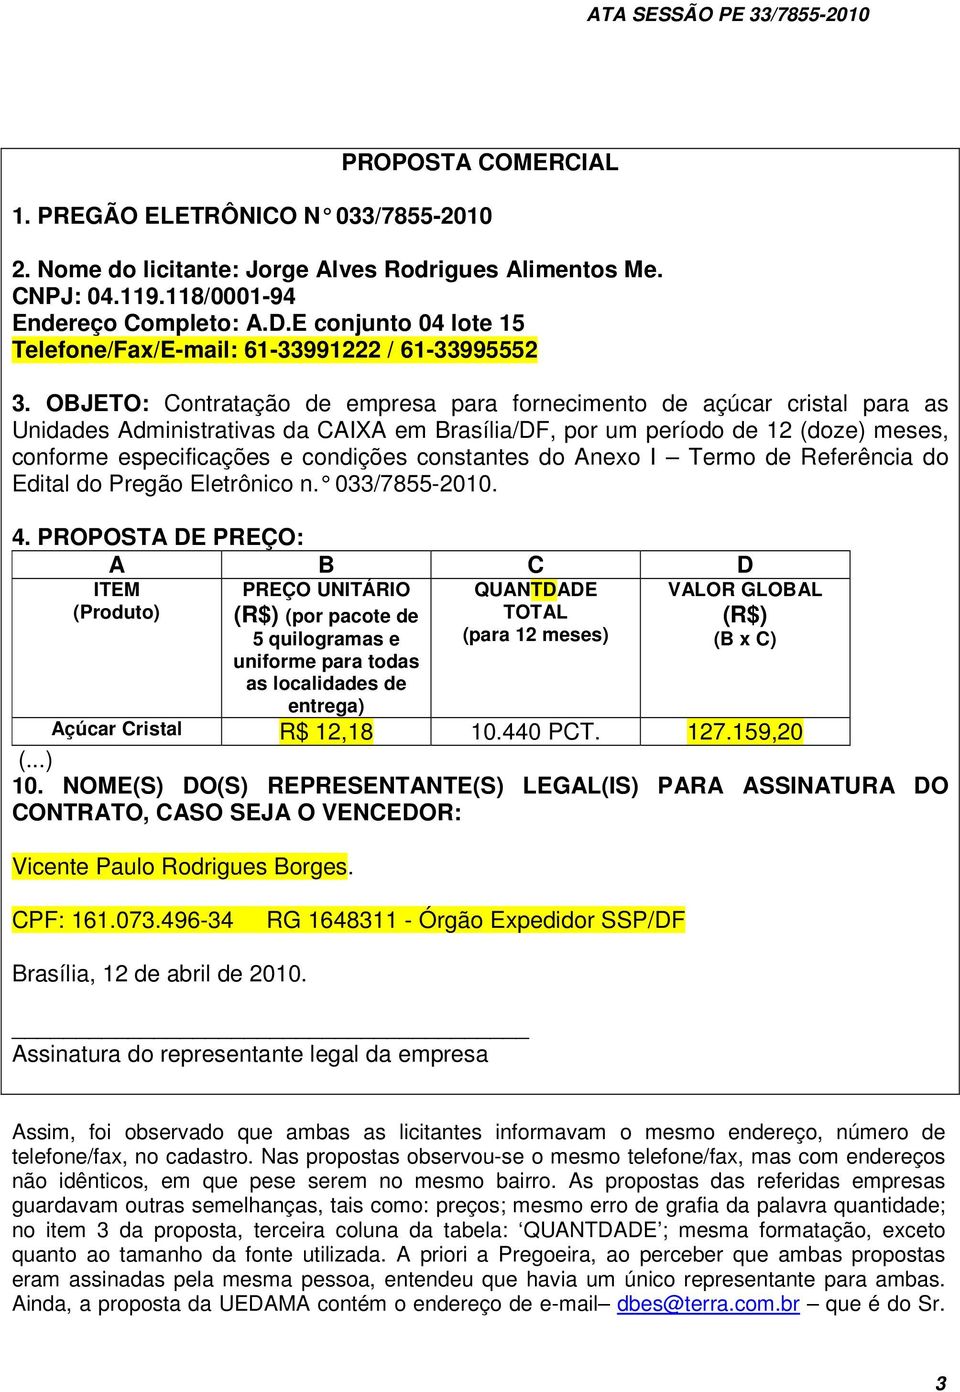 OBJETO: Contratação de empresa para fornecimento de açúcar cristal para as Unidades Administrativas da CAIXA em Brasília/DF, por um período de 12 (doze) meses, conforme especificações e condições